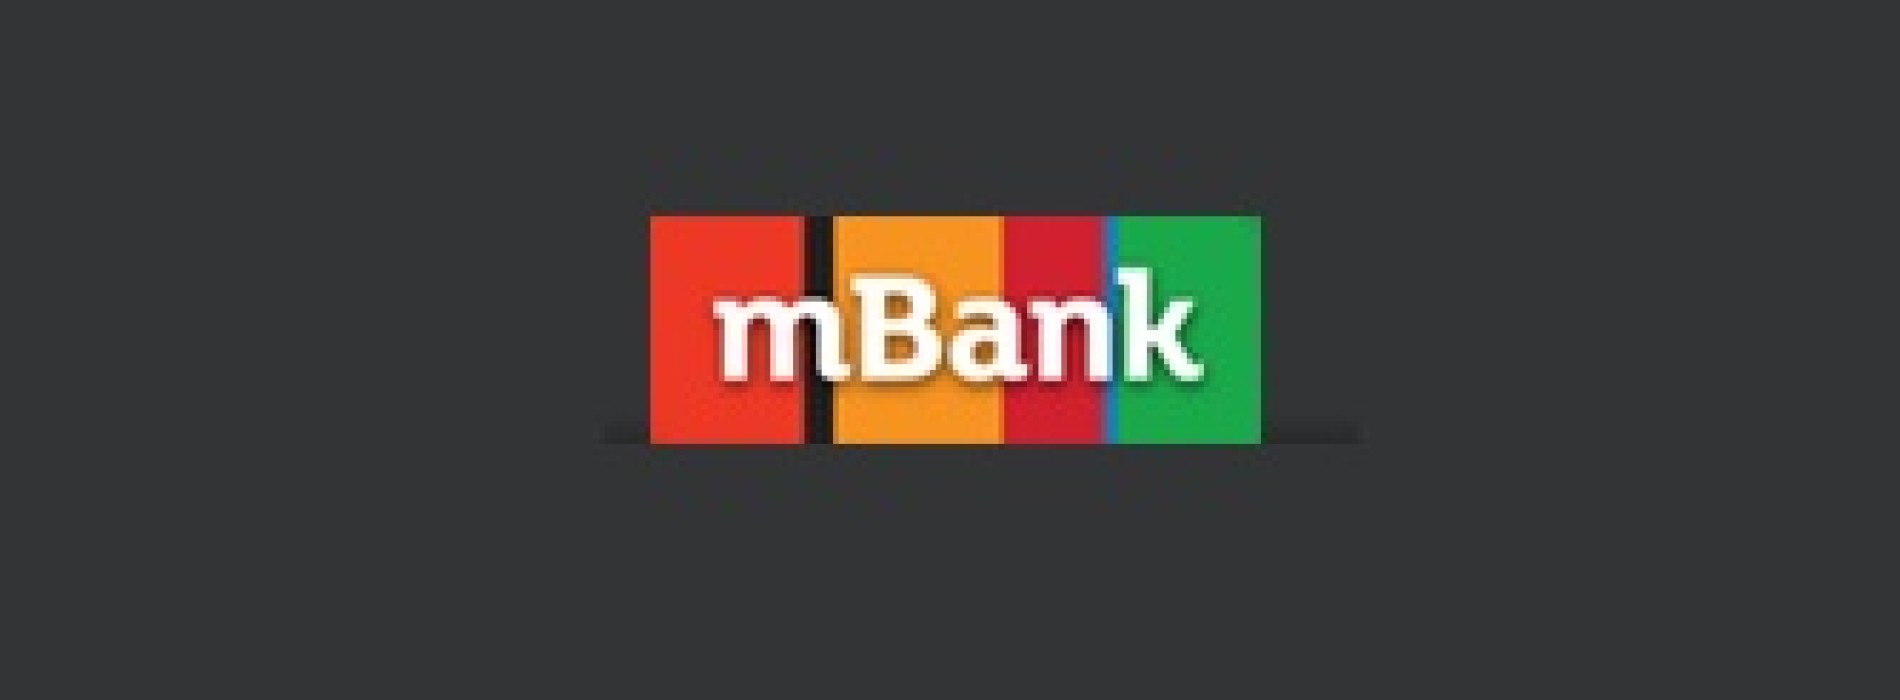 Mobilne nowości od mBanku